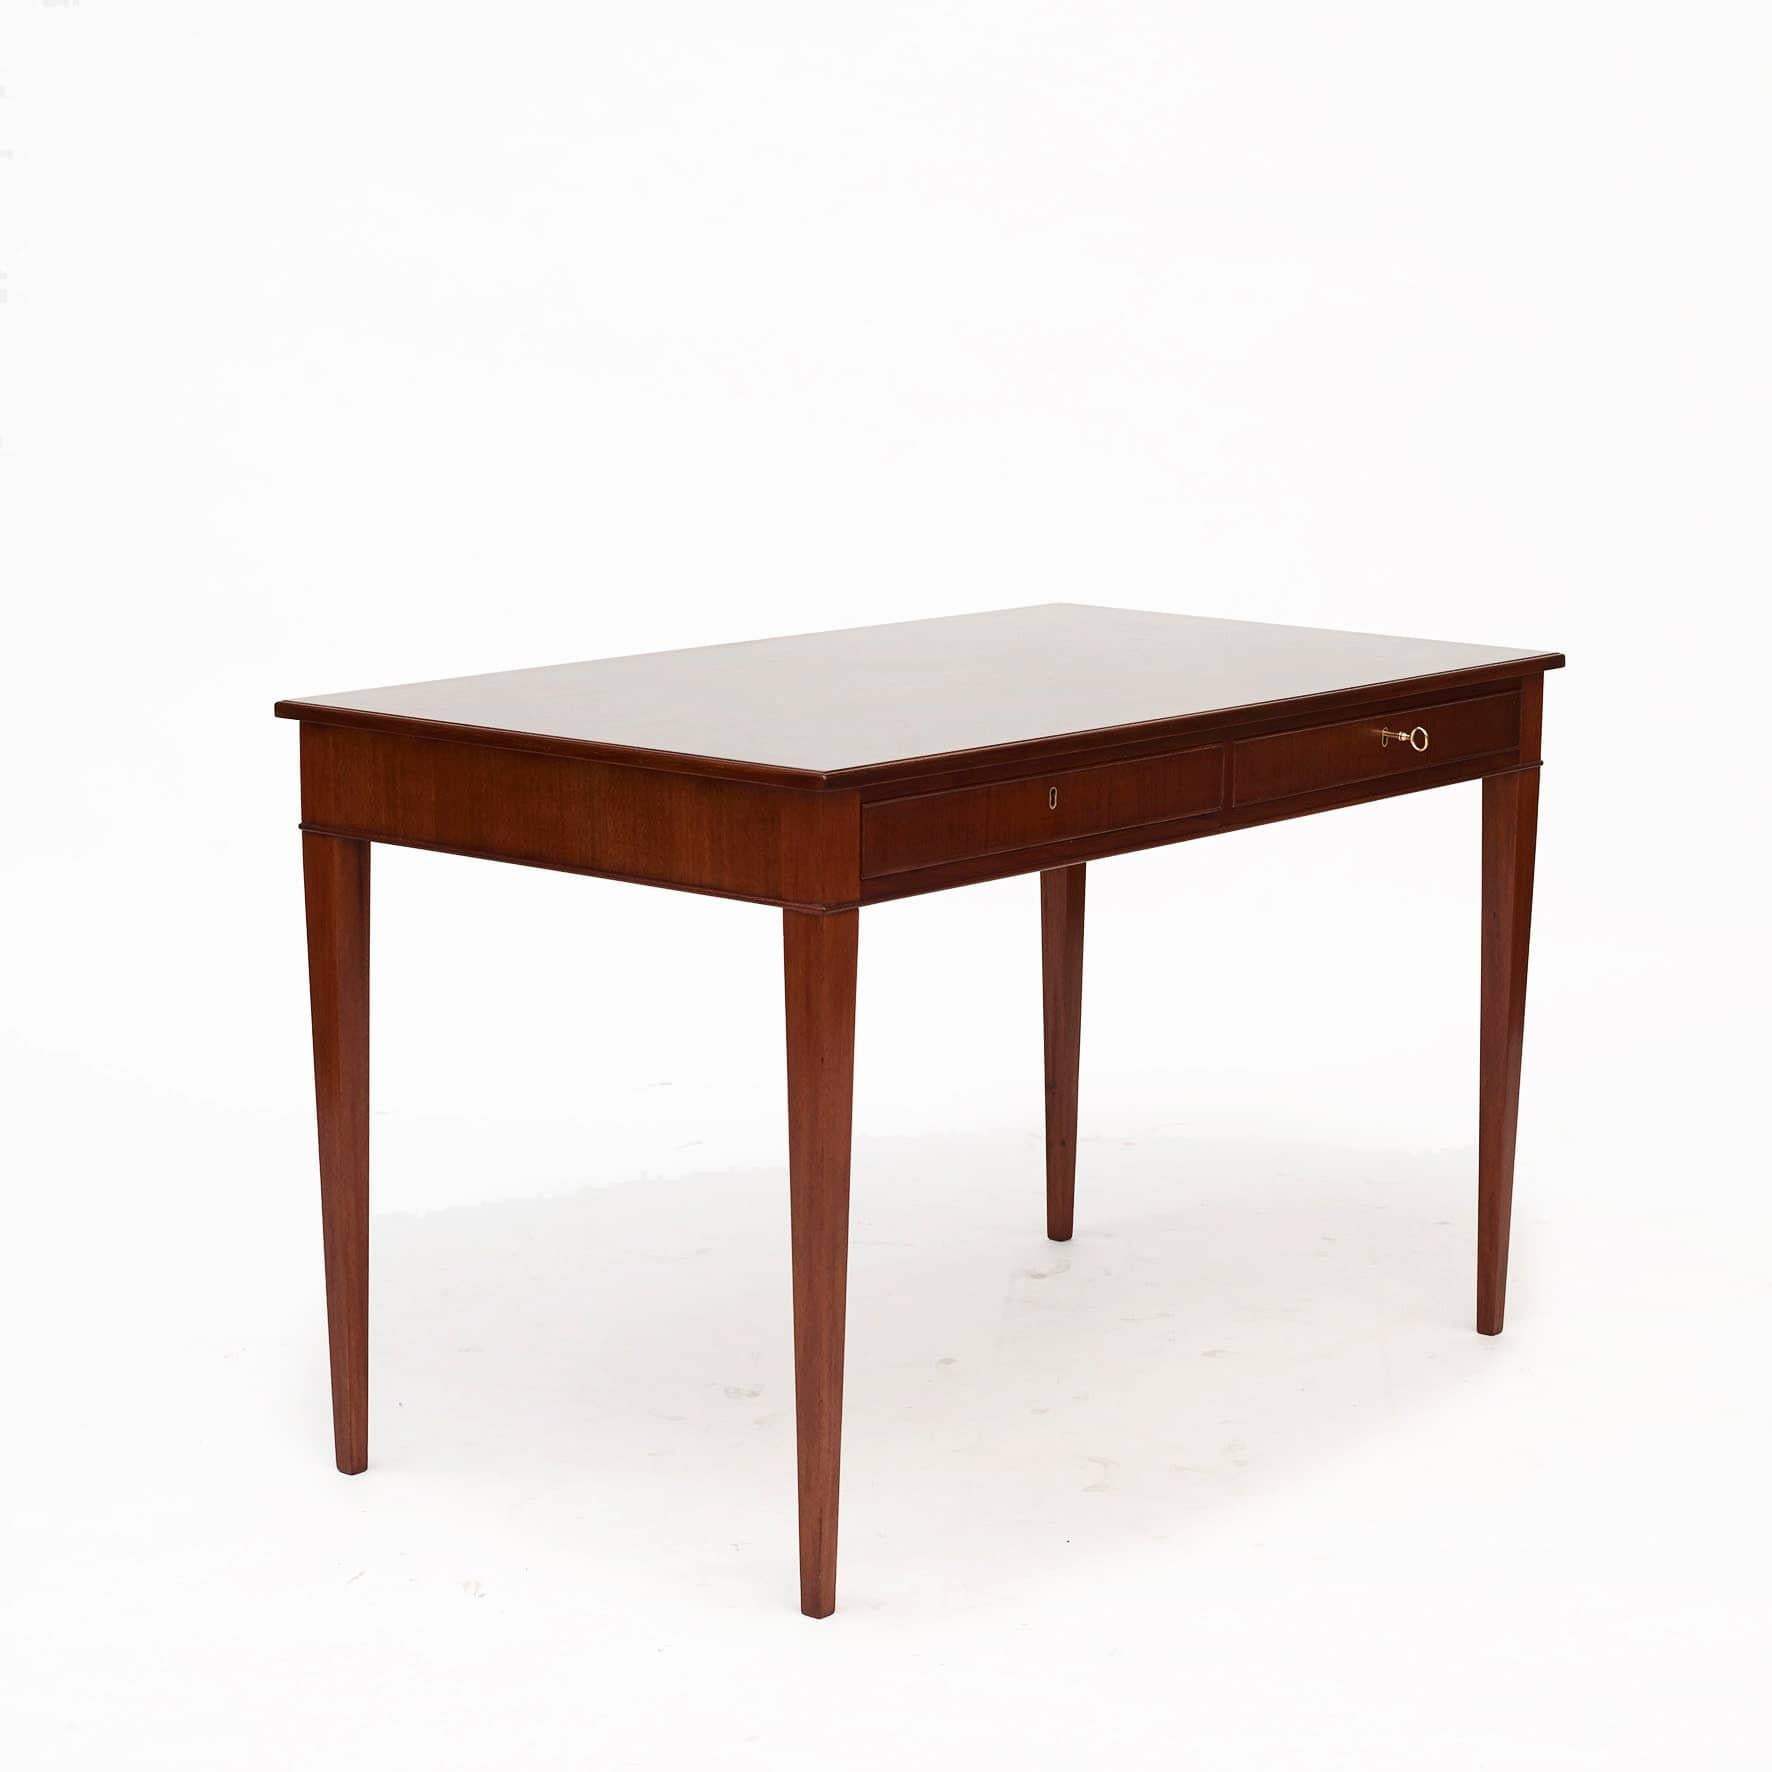 Frits Henningsen, designer de meubles et ébéniste danois (1889-1965).
Elegante table à écrire en acajou massif.
Plateau rectangulaire à bord mouluré au-dessus des tiroirs, reposant sur d'élégants pieds fuselés carrés.

Hauteur du tablier : 60,5